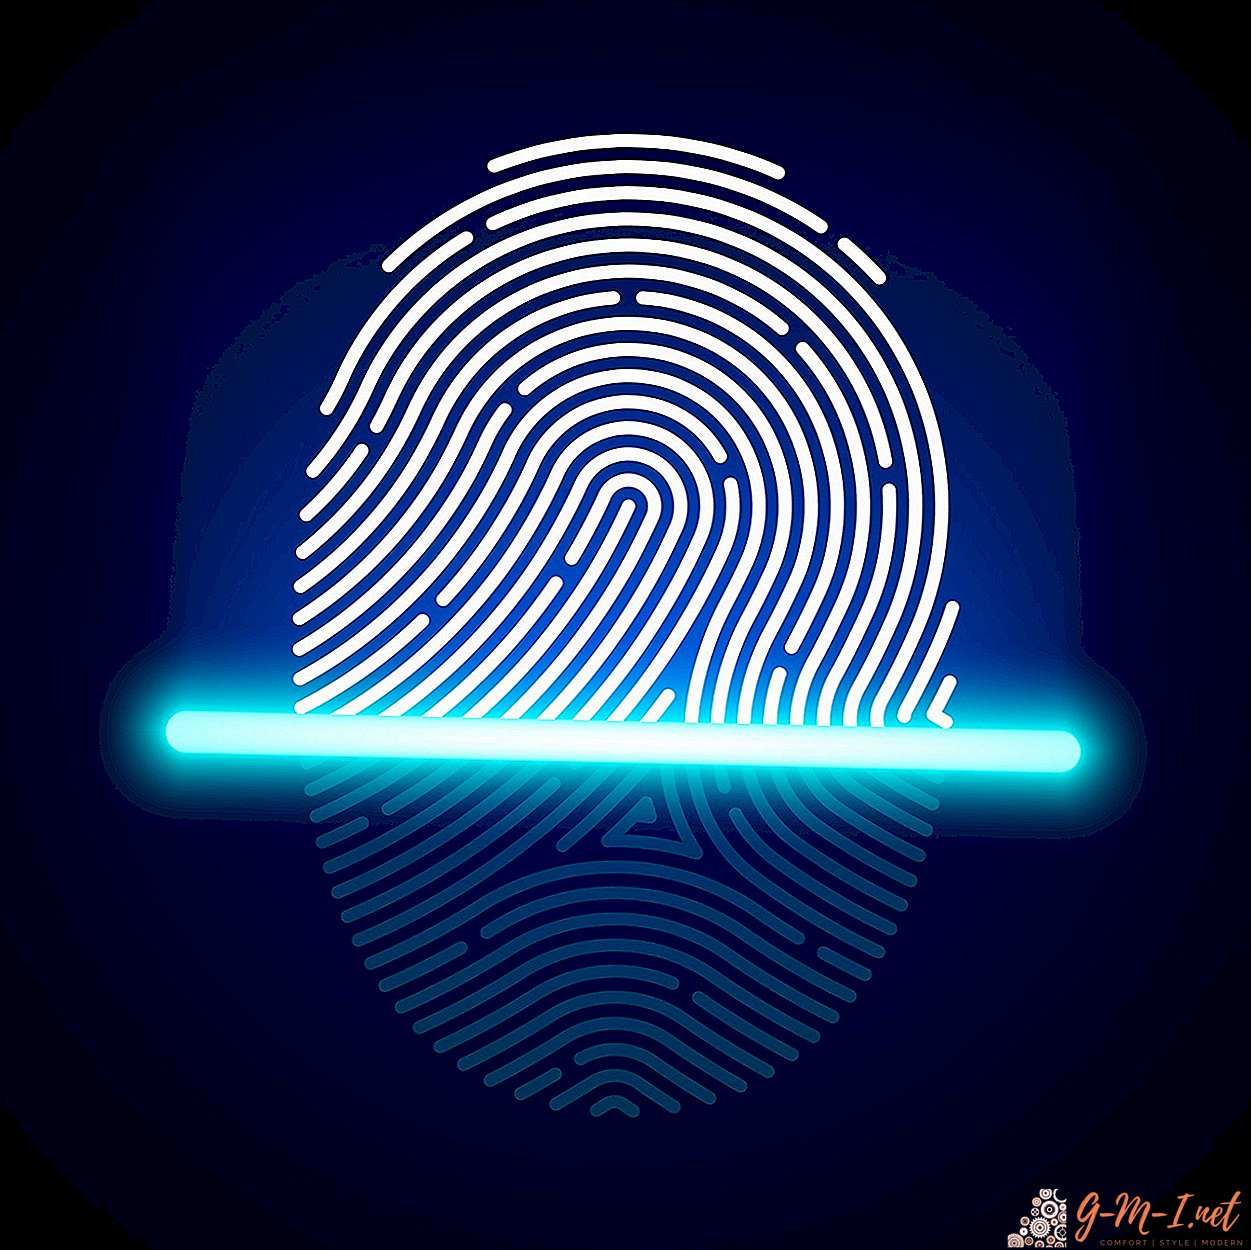 Fingerprint scanner does not work